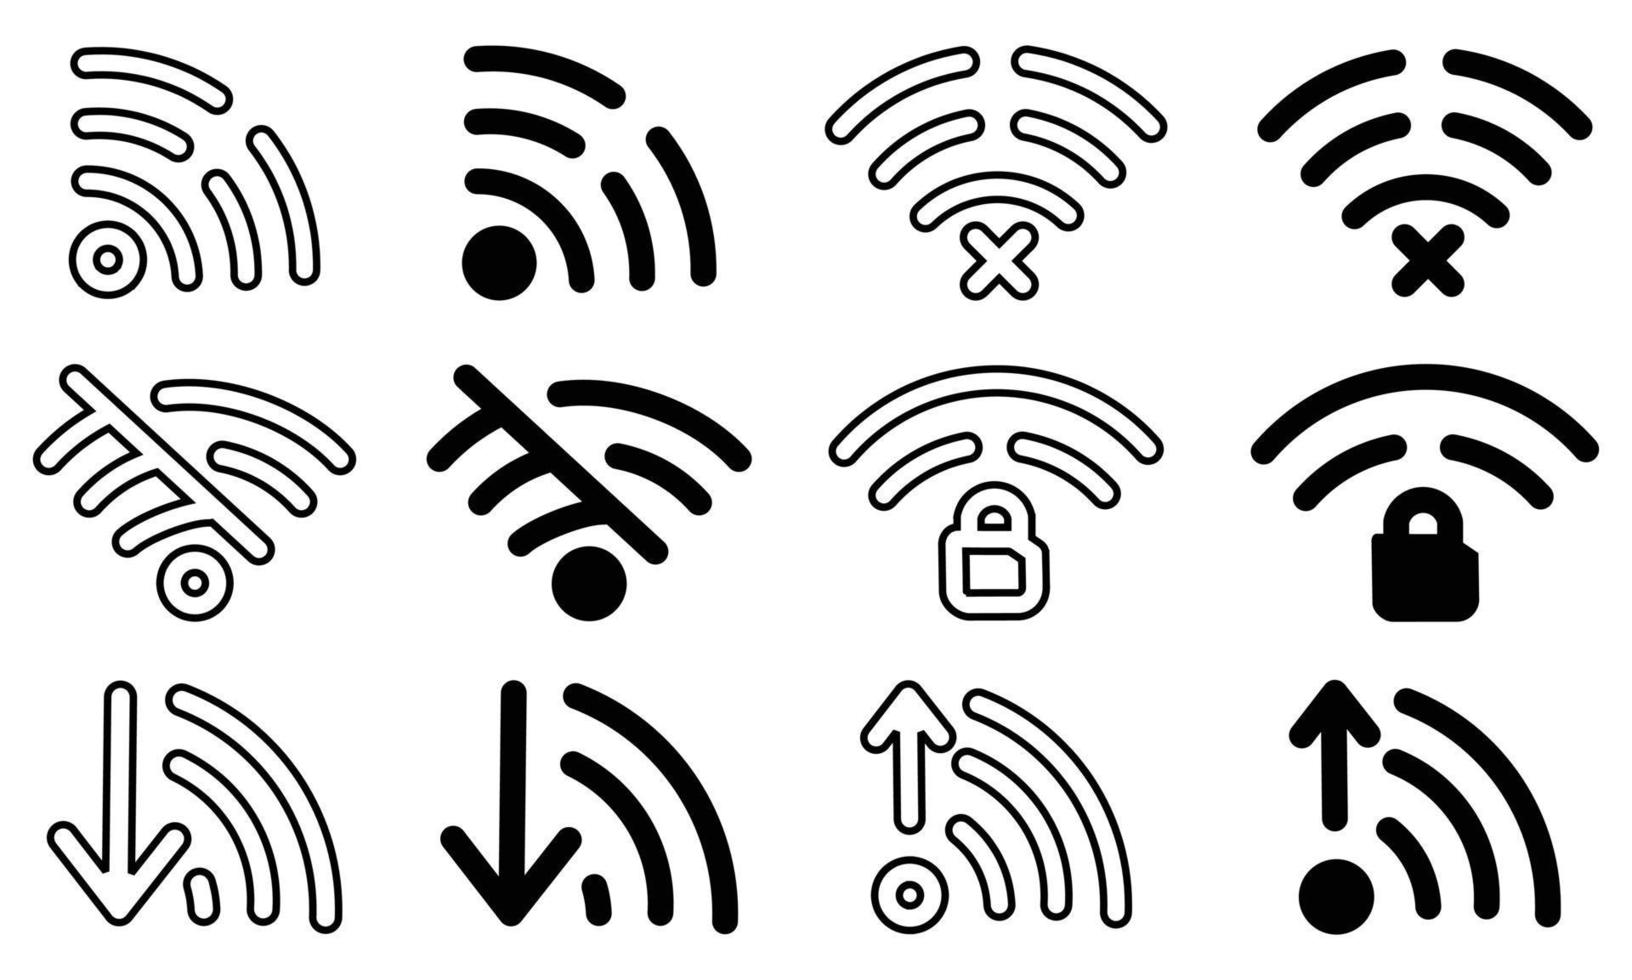 wi-fi establecer iconos ondas de aire de conexión plana e inalámbrica, conjunto de diferentes iconos inalámbricos y wifi para el diseño vector